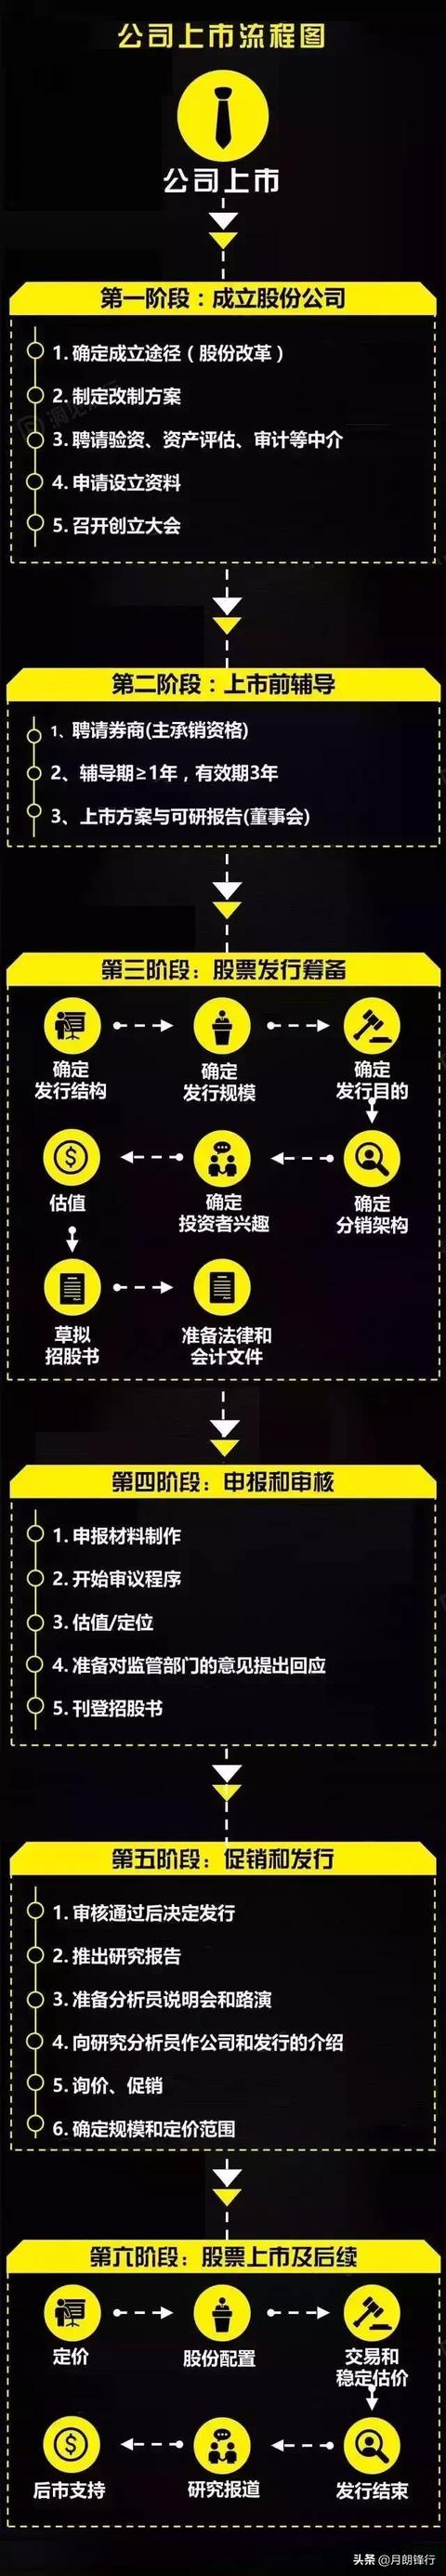 一张图尽览中国公司国内上市的6大阶段【附史上最详细流程】